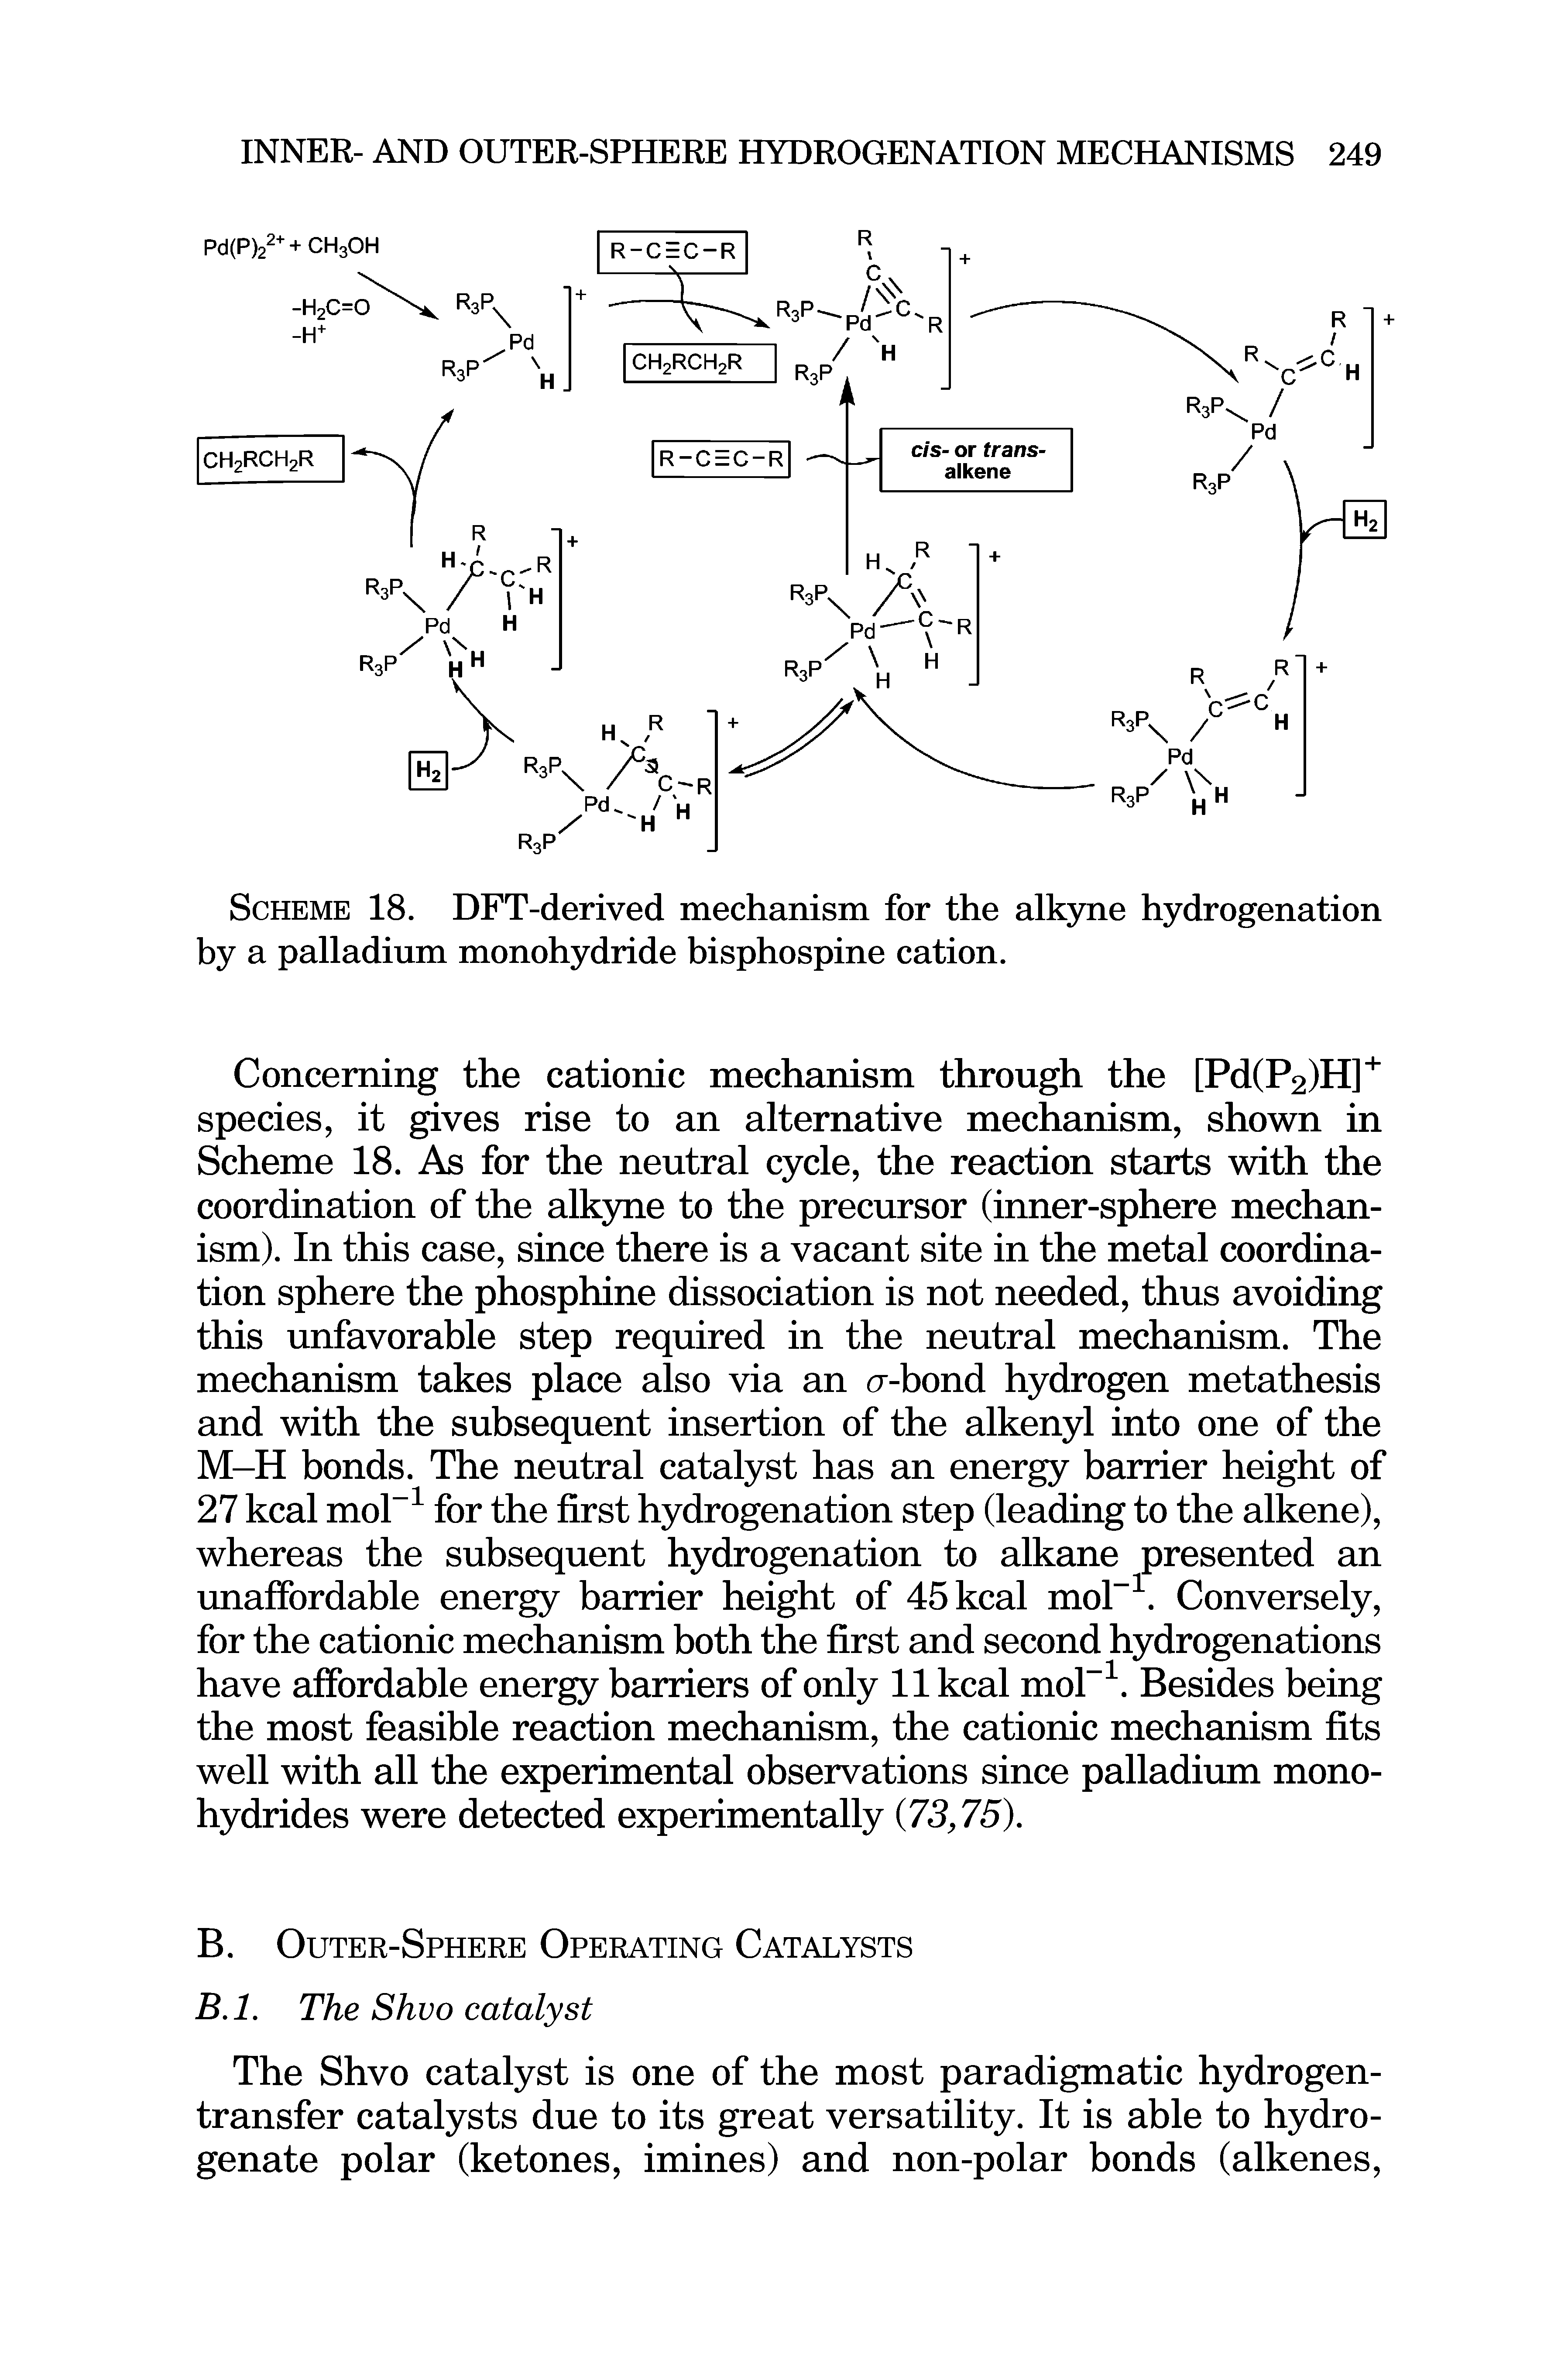 Scheme 18. DFT-derived mechanism for the alkyne hydrogenation by a palladium monohydride bisphospine cation.